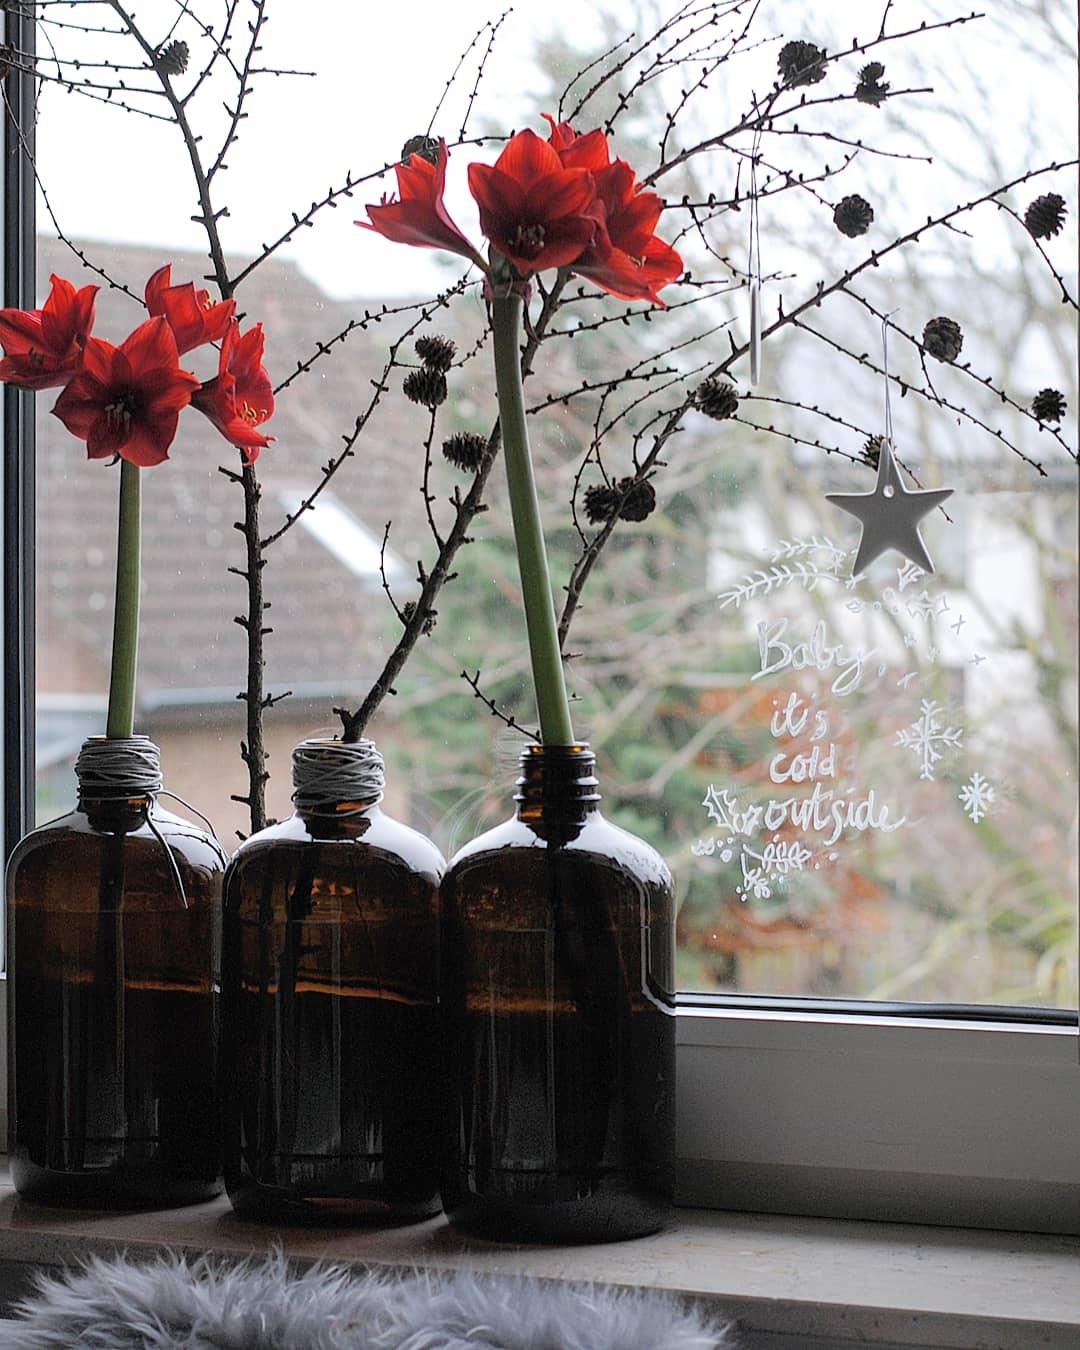 Amarylliszeit!
#amaryllis #vasenliebe #weihnachten #advent #couchstyle #interiorinspo 